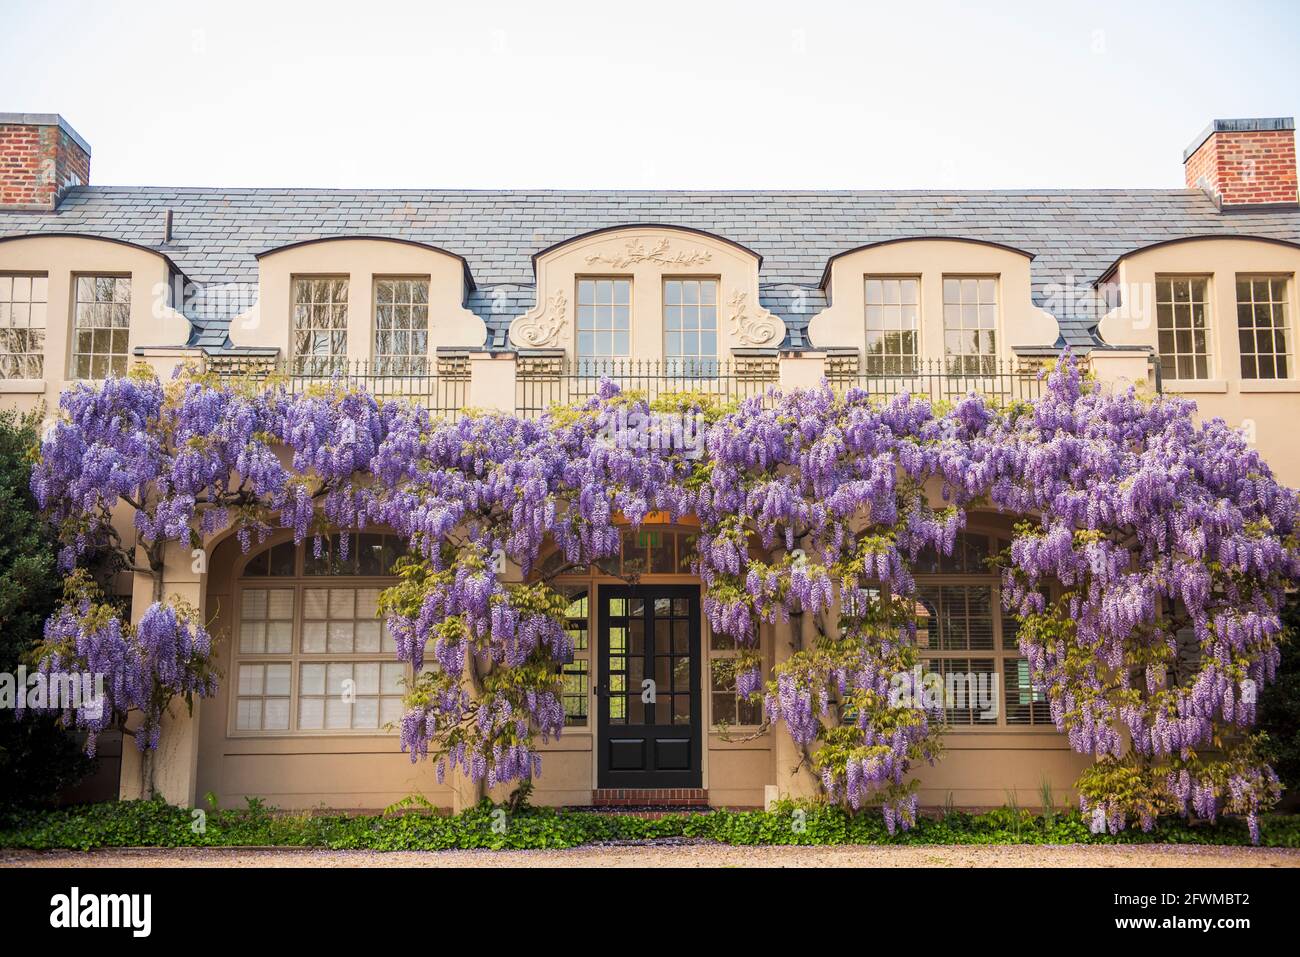 Des fleurs de wisteria couvrent la bibliothèque de Dumbarton Oaks, dans le nord-ouest de Washington, D.C. Banque D'Images